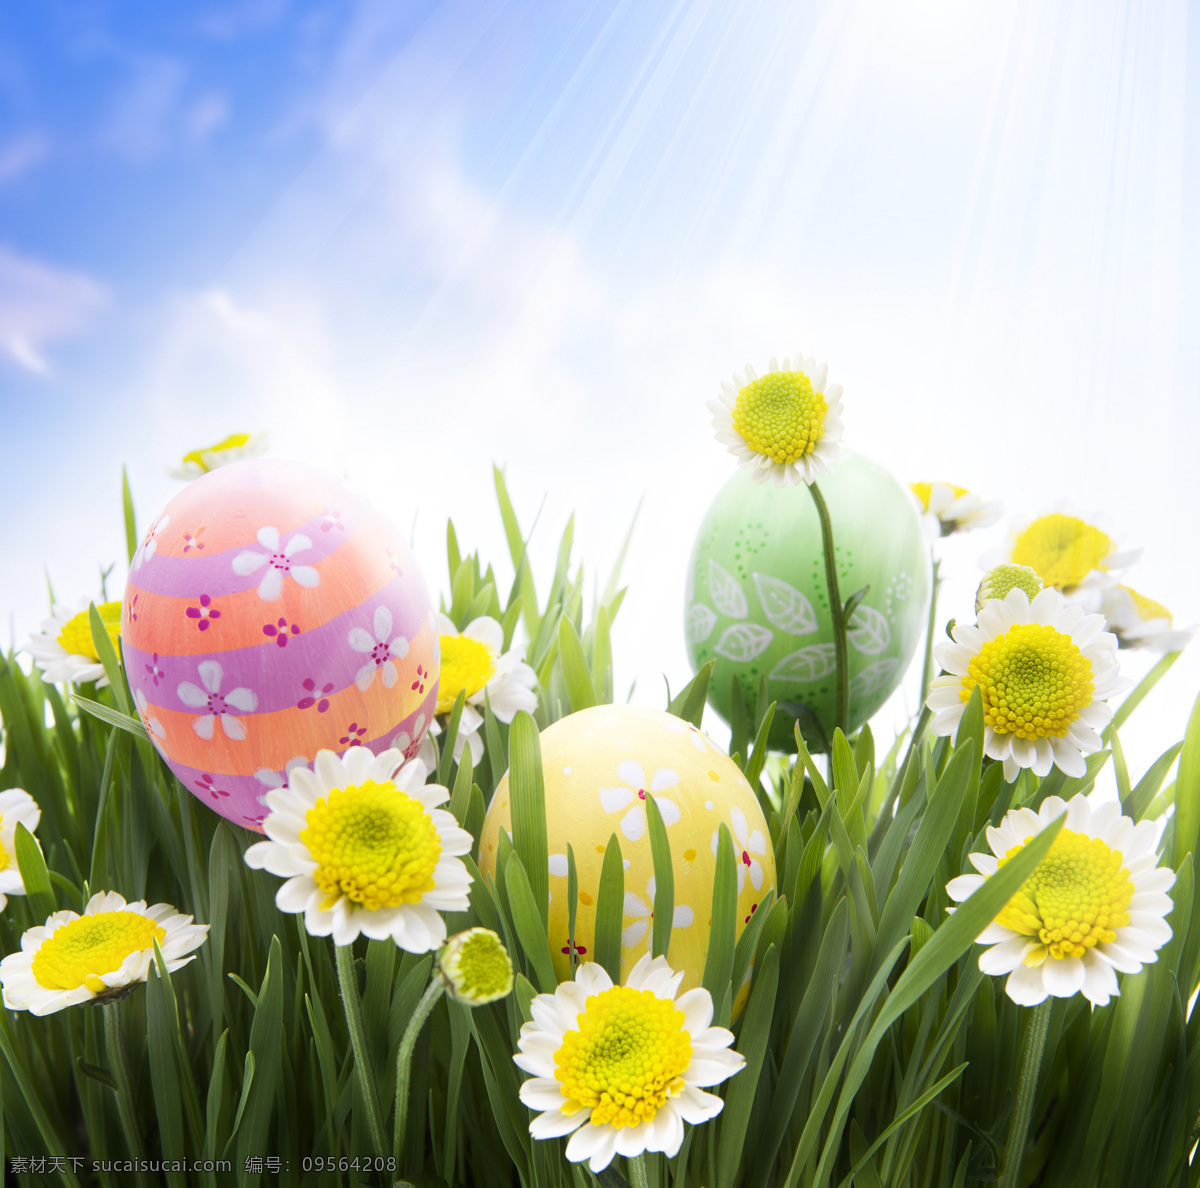 复活节彩蛋 节日 复活节 可爱 草地 天空 彩蛋 鲜花 节日庆典 生活百科 白色